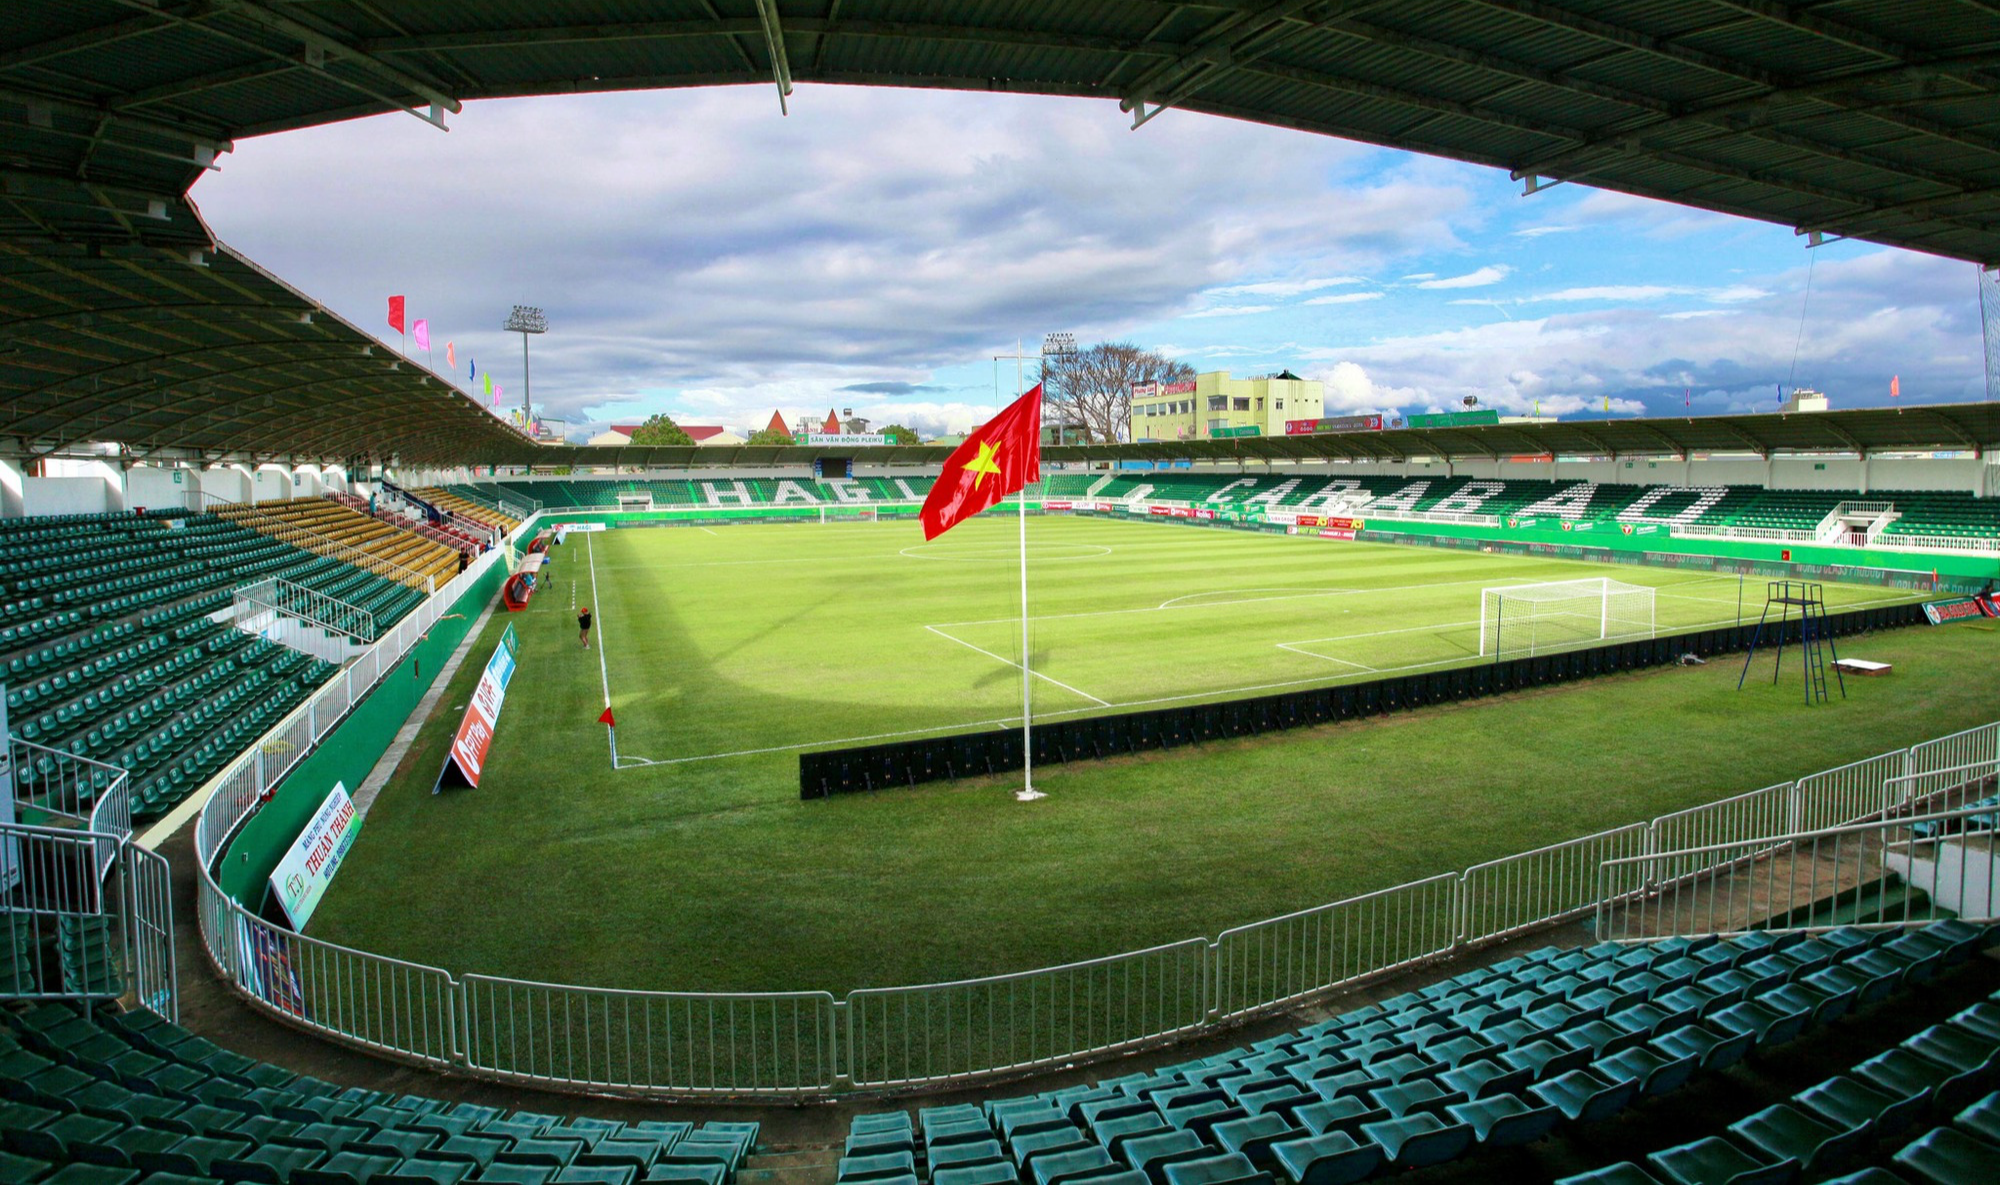 Đã mắt với mặt cỏ xanh mướt của sân nhà HAGL trước trận ra quân V-League - Ảnh 3.